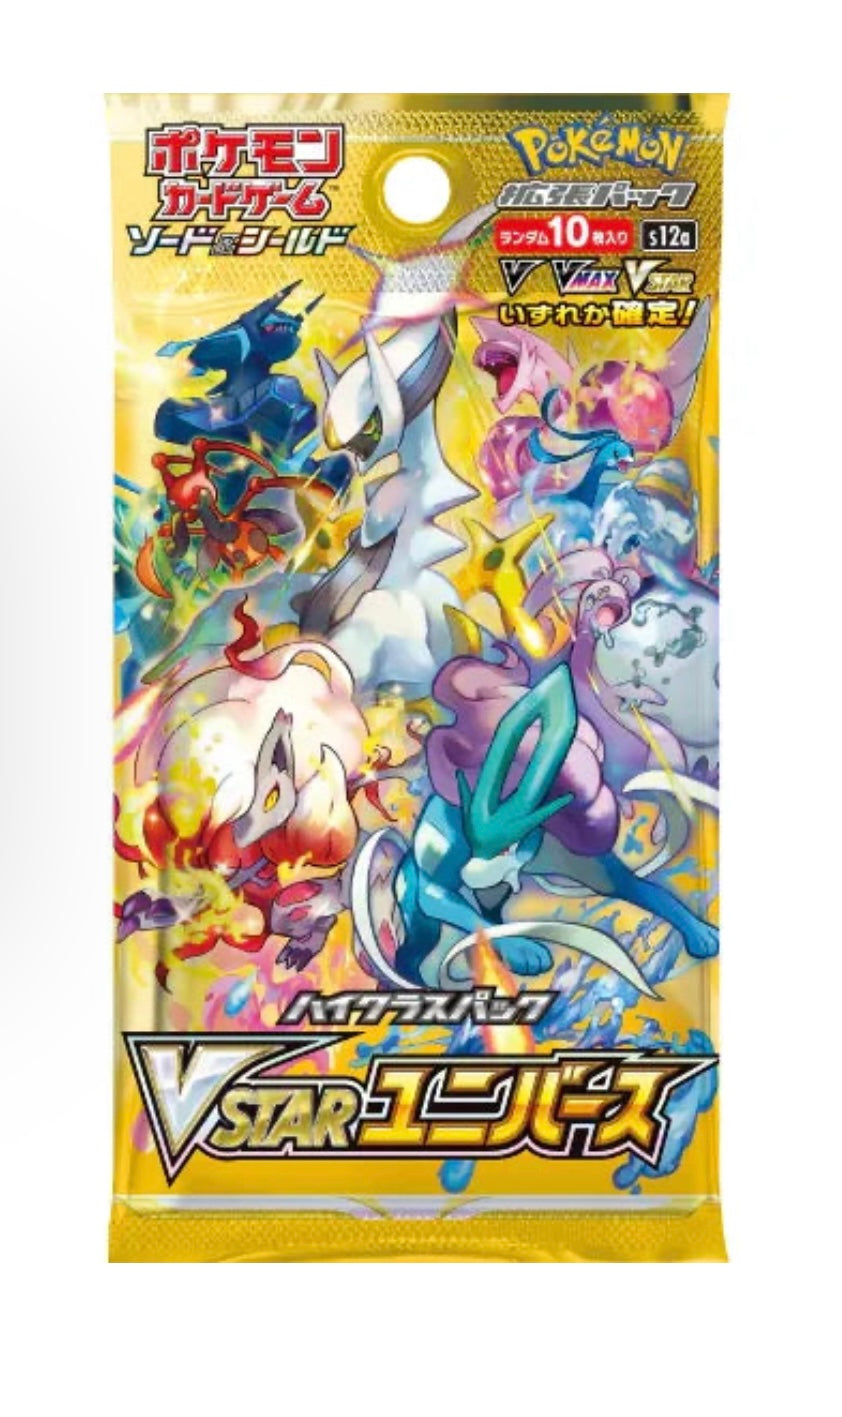 Pokémon Vstar Universe Booster Box Japanese